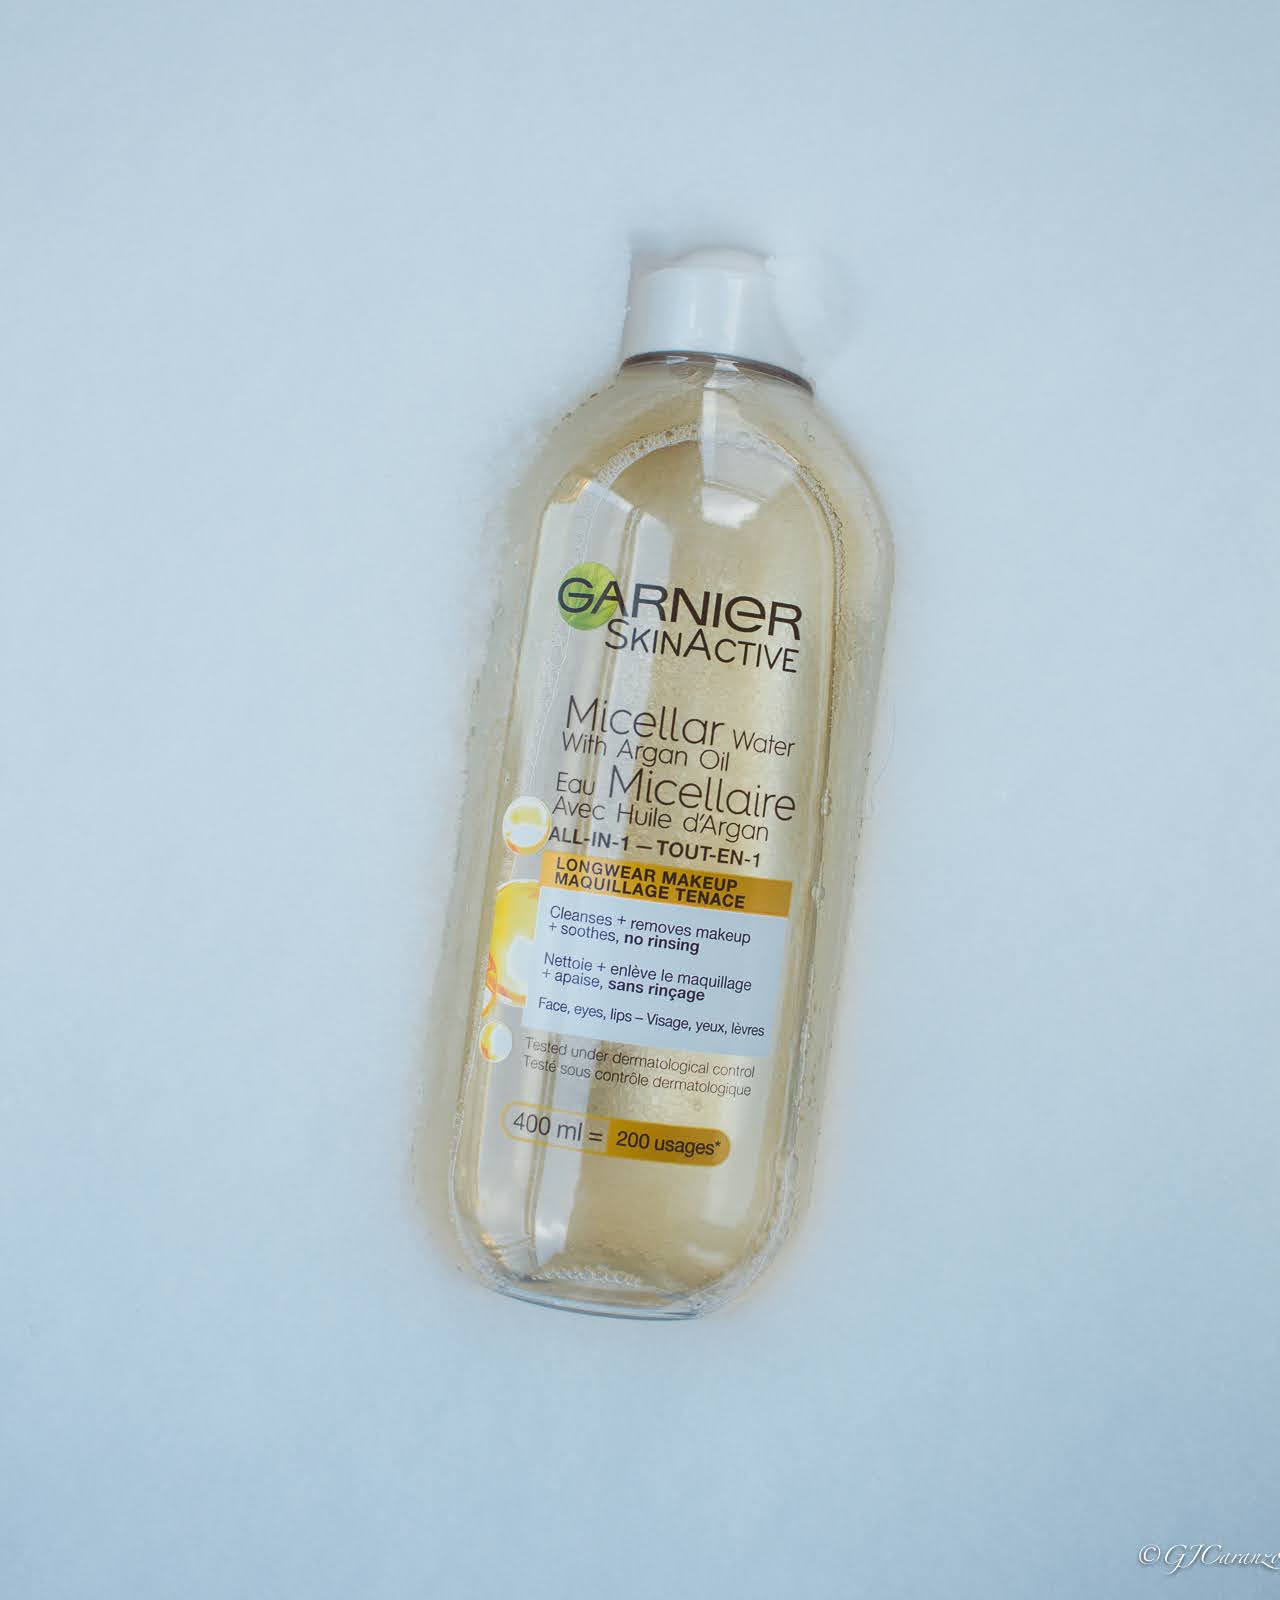 Garnier SkinActive Micellar Water with Argan Oil review